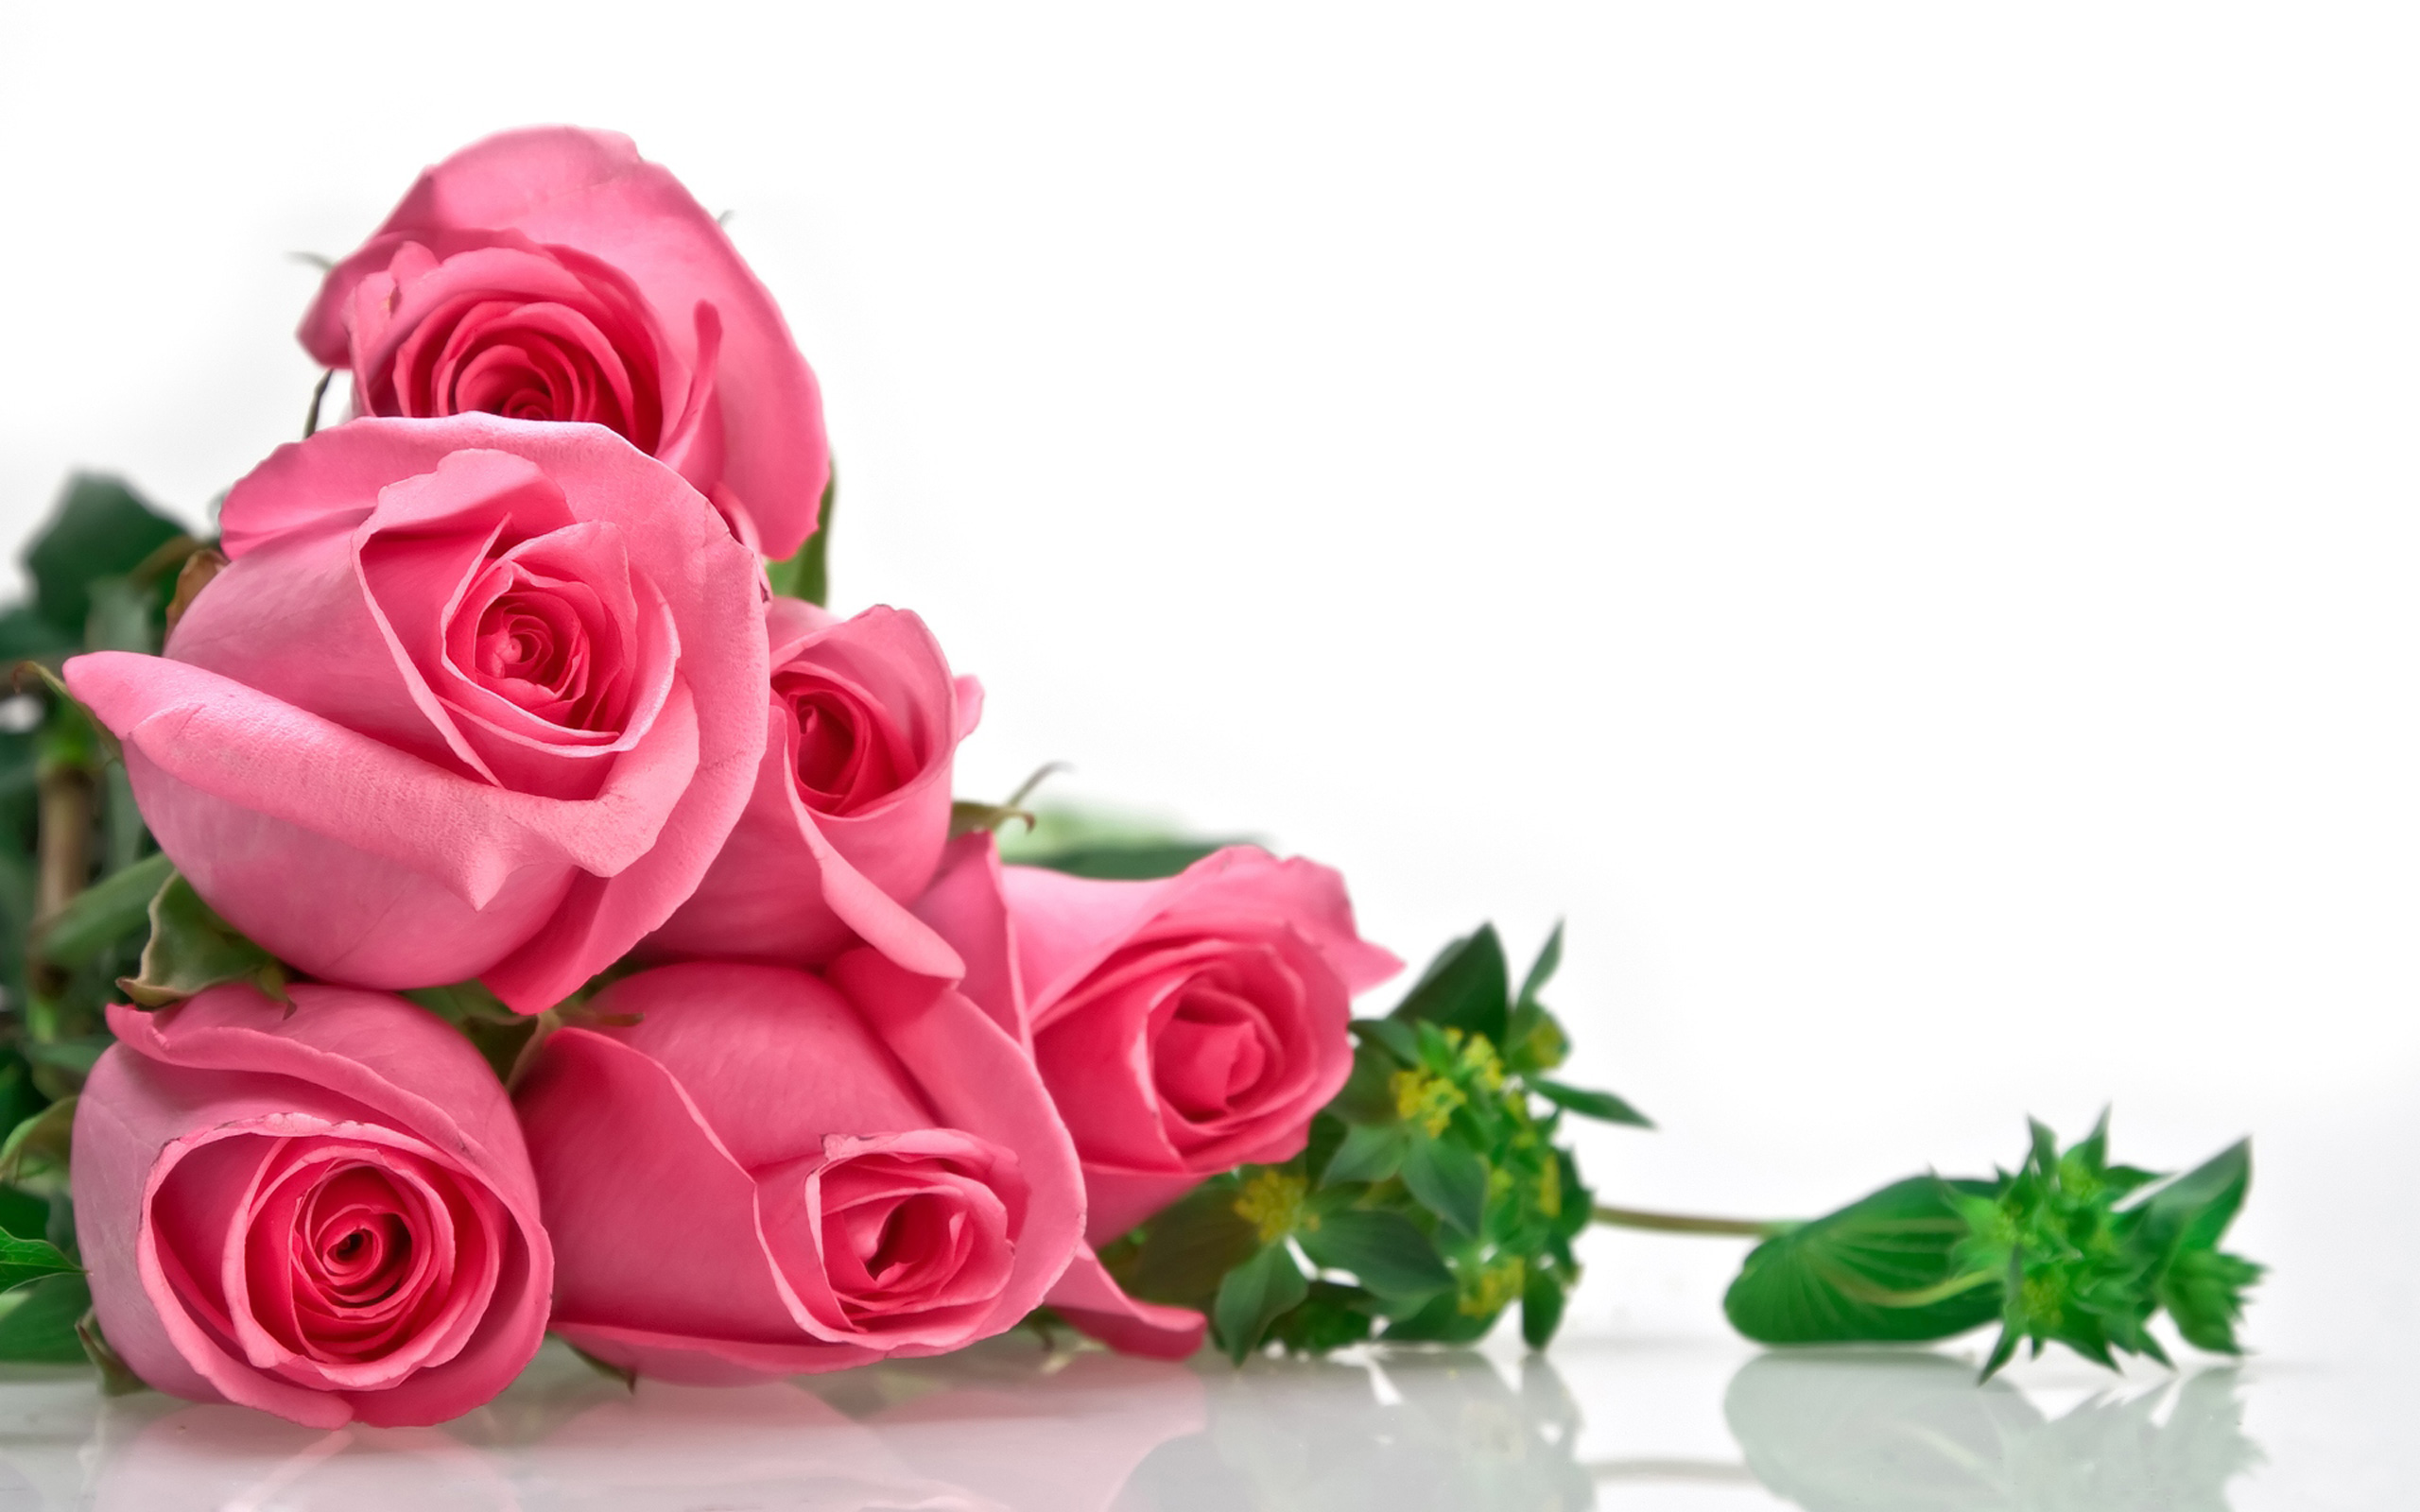 Romantic Rose Bouquet Puter Desktop Wallpaper Pictures